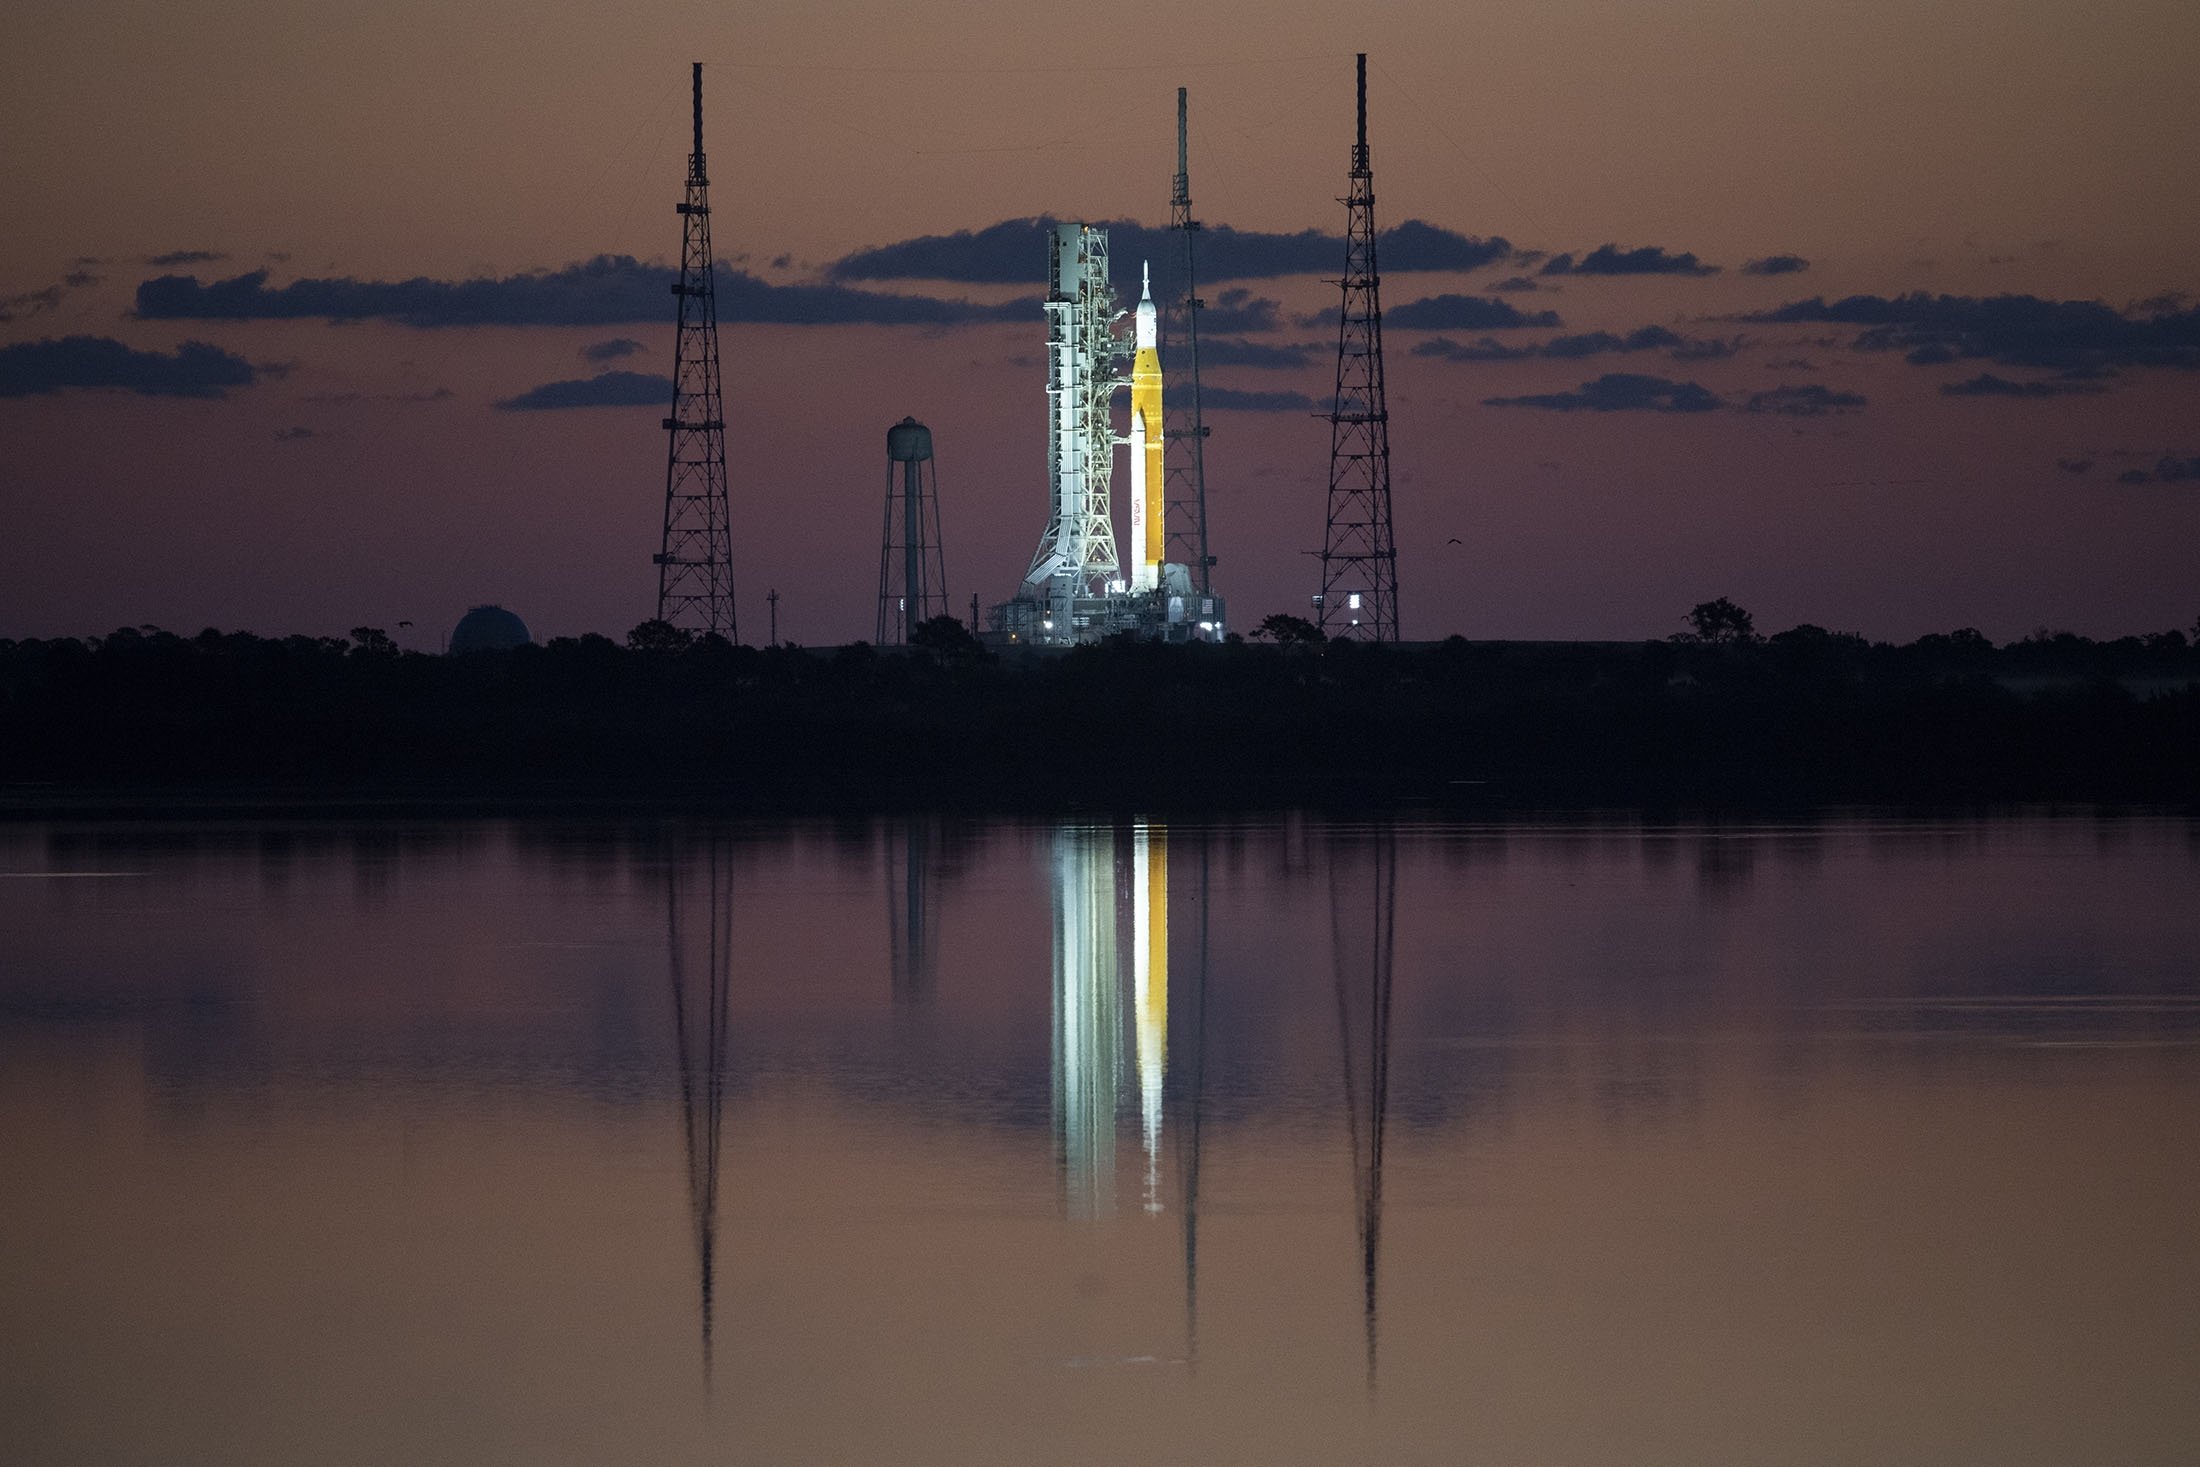 Roket Space Launch System (SLS) NASA dengan pesawat ruang angkasa Orion terlihat saat matahari terbit di atas peluncur bergerak di Launch Complex 39B di Kennedy Space Center NASA di Cape Canaveral, Florida, AS, 4 April 2022. (NASA via AP)